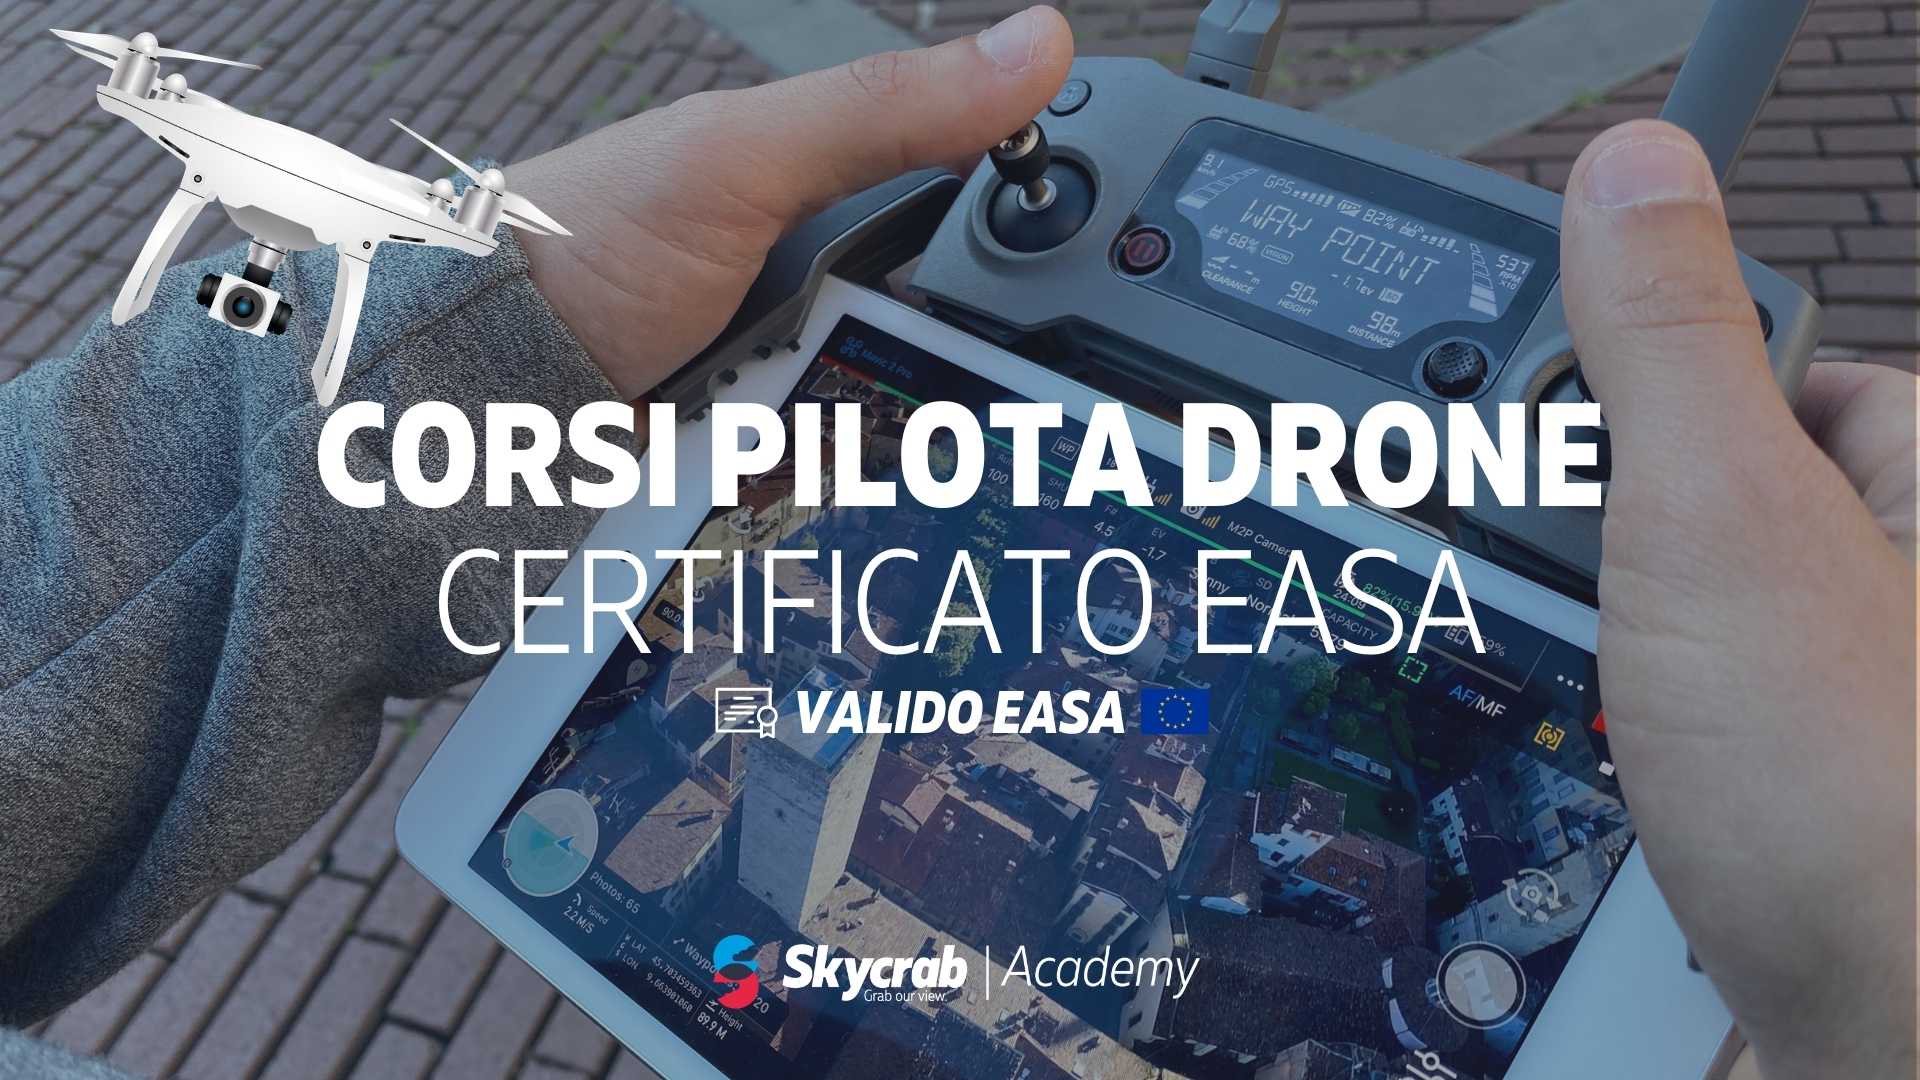 Corsi pilota drone EU OPEN A2, siamo ufficialmente autorizzati a livello europeo EASA!